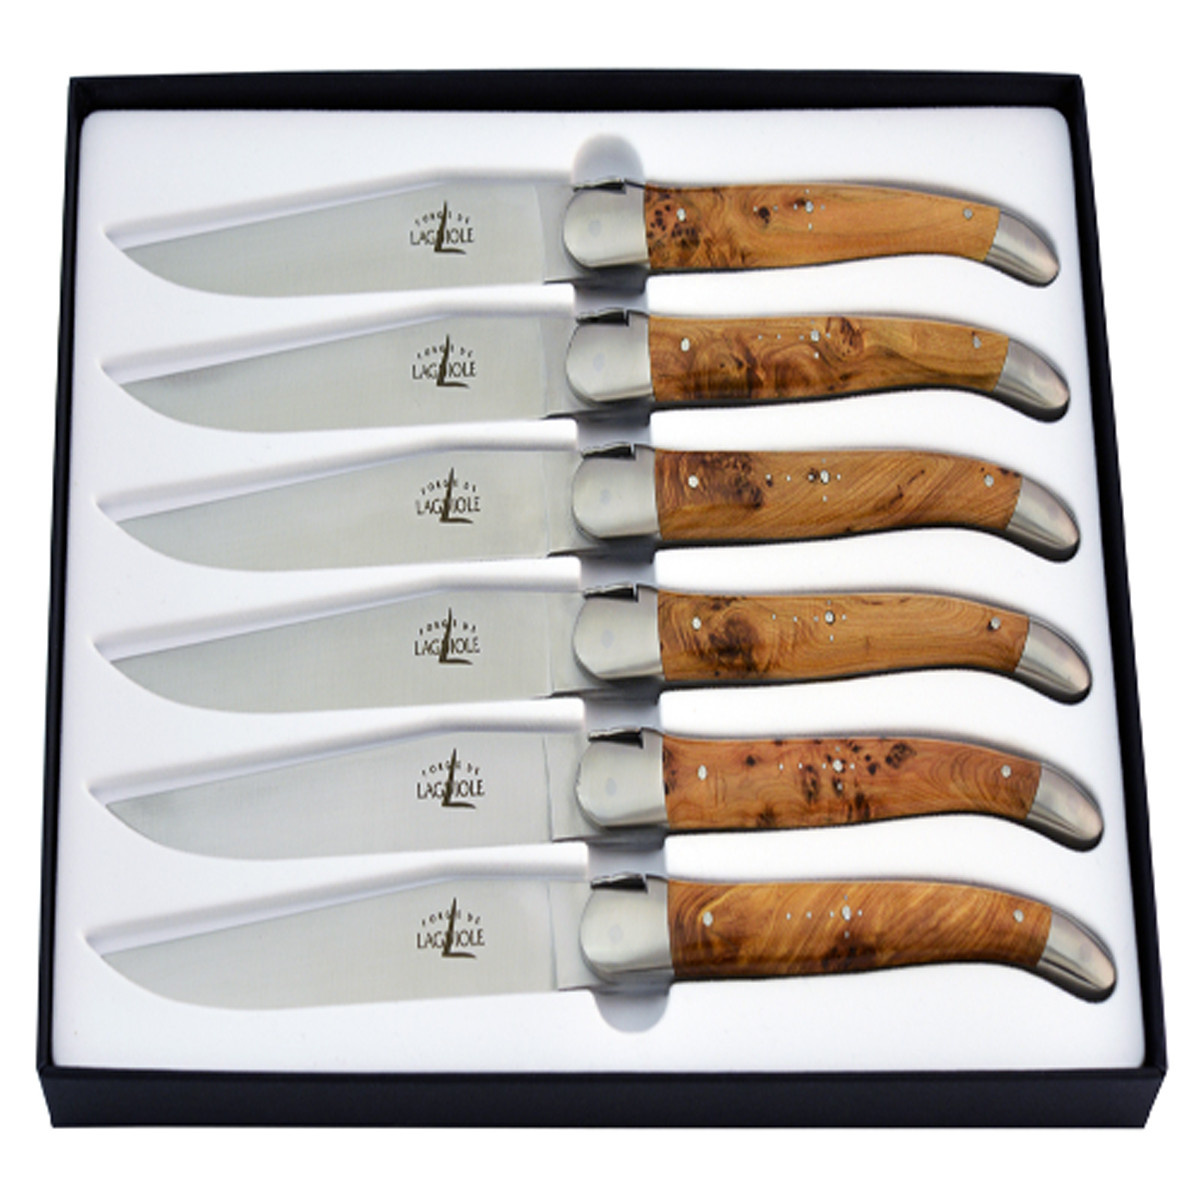 https://cdn.shoplightspeed.com/shops/610486/files/44757527/forge-de-laguiole-juniper-6-piece-steak-knife-set.jpg